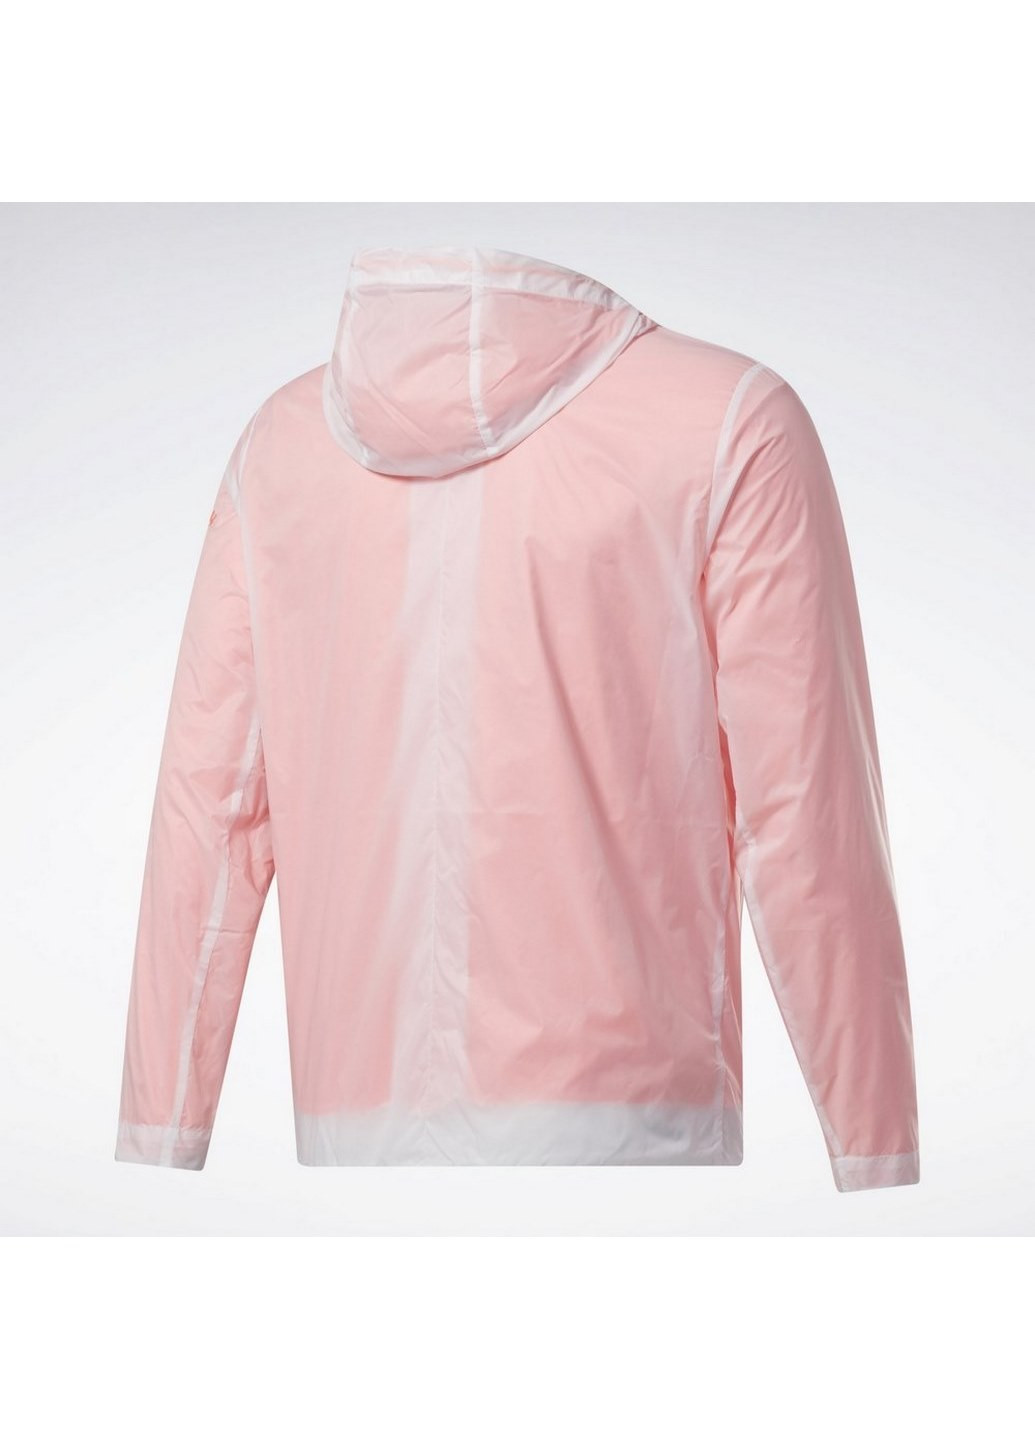 Розовая демисезонная женская куртка outerwear fleece gl3196 Reebok